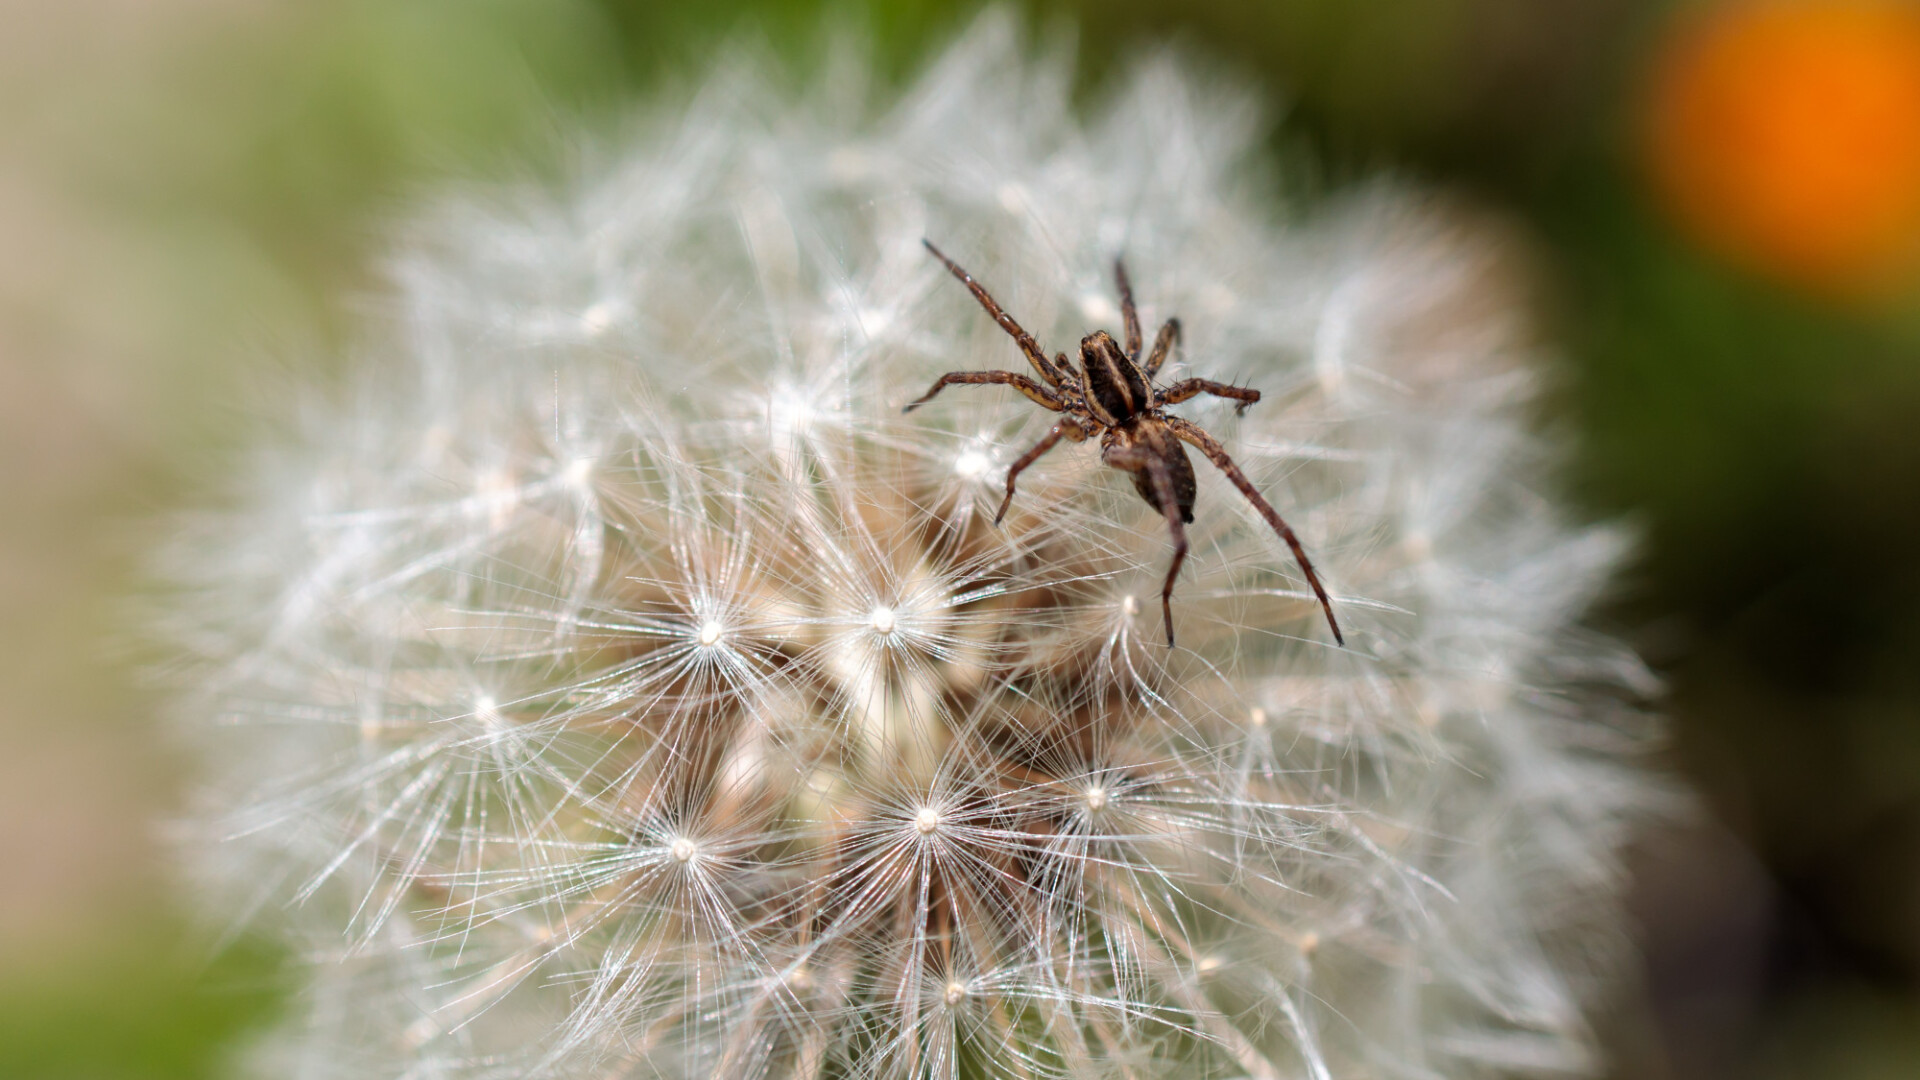 Spider on dandelion